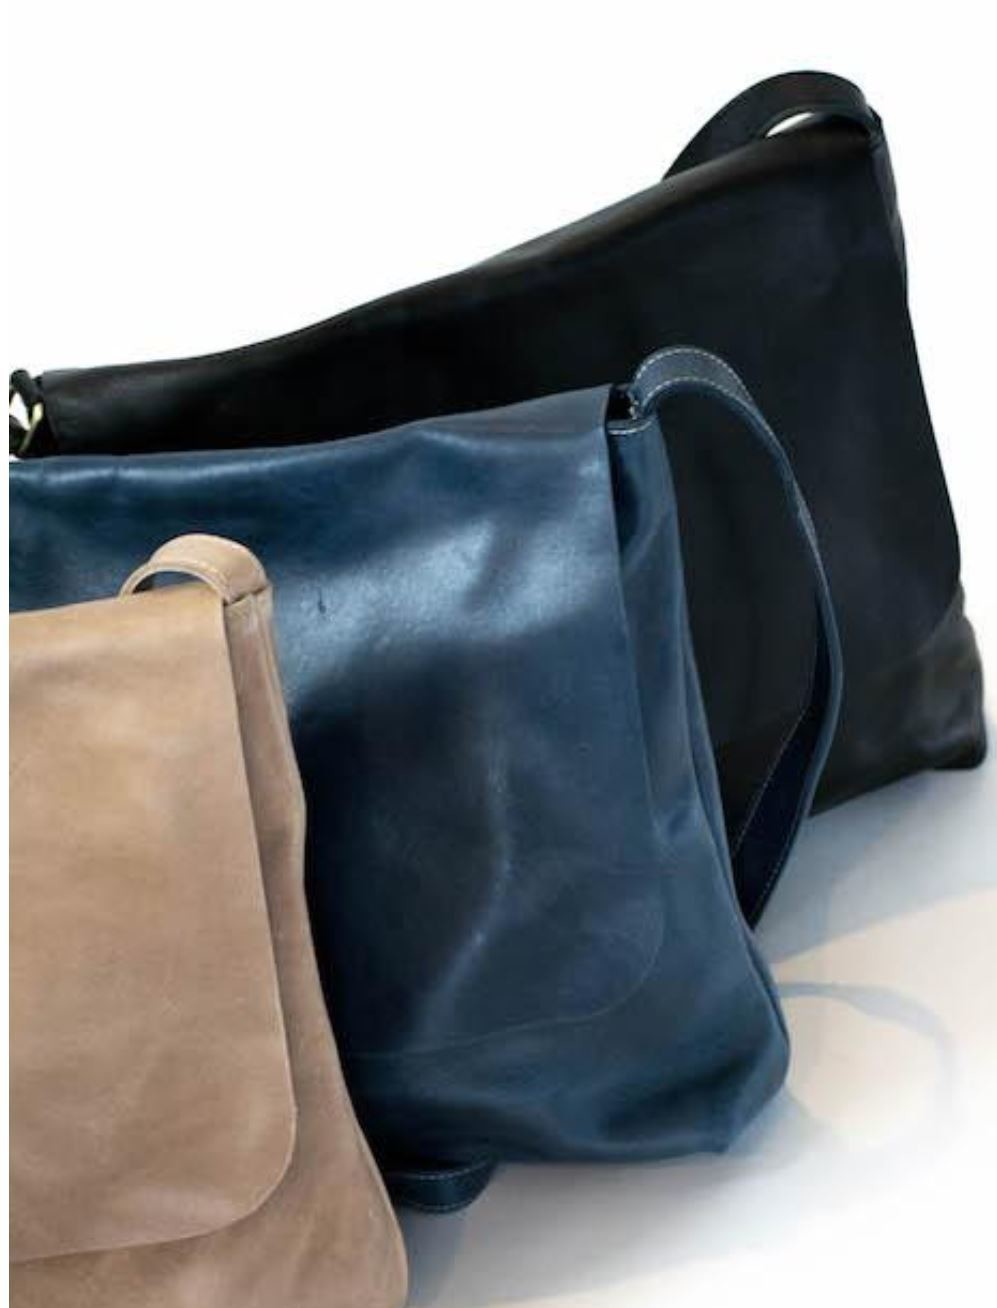 Telak Leather Messenger Bag